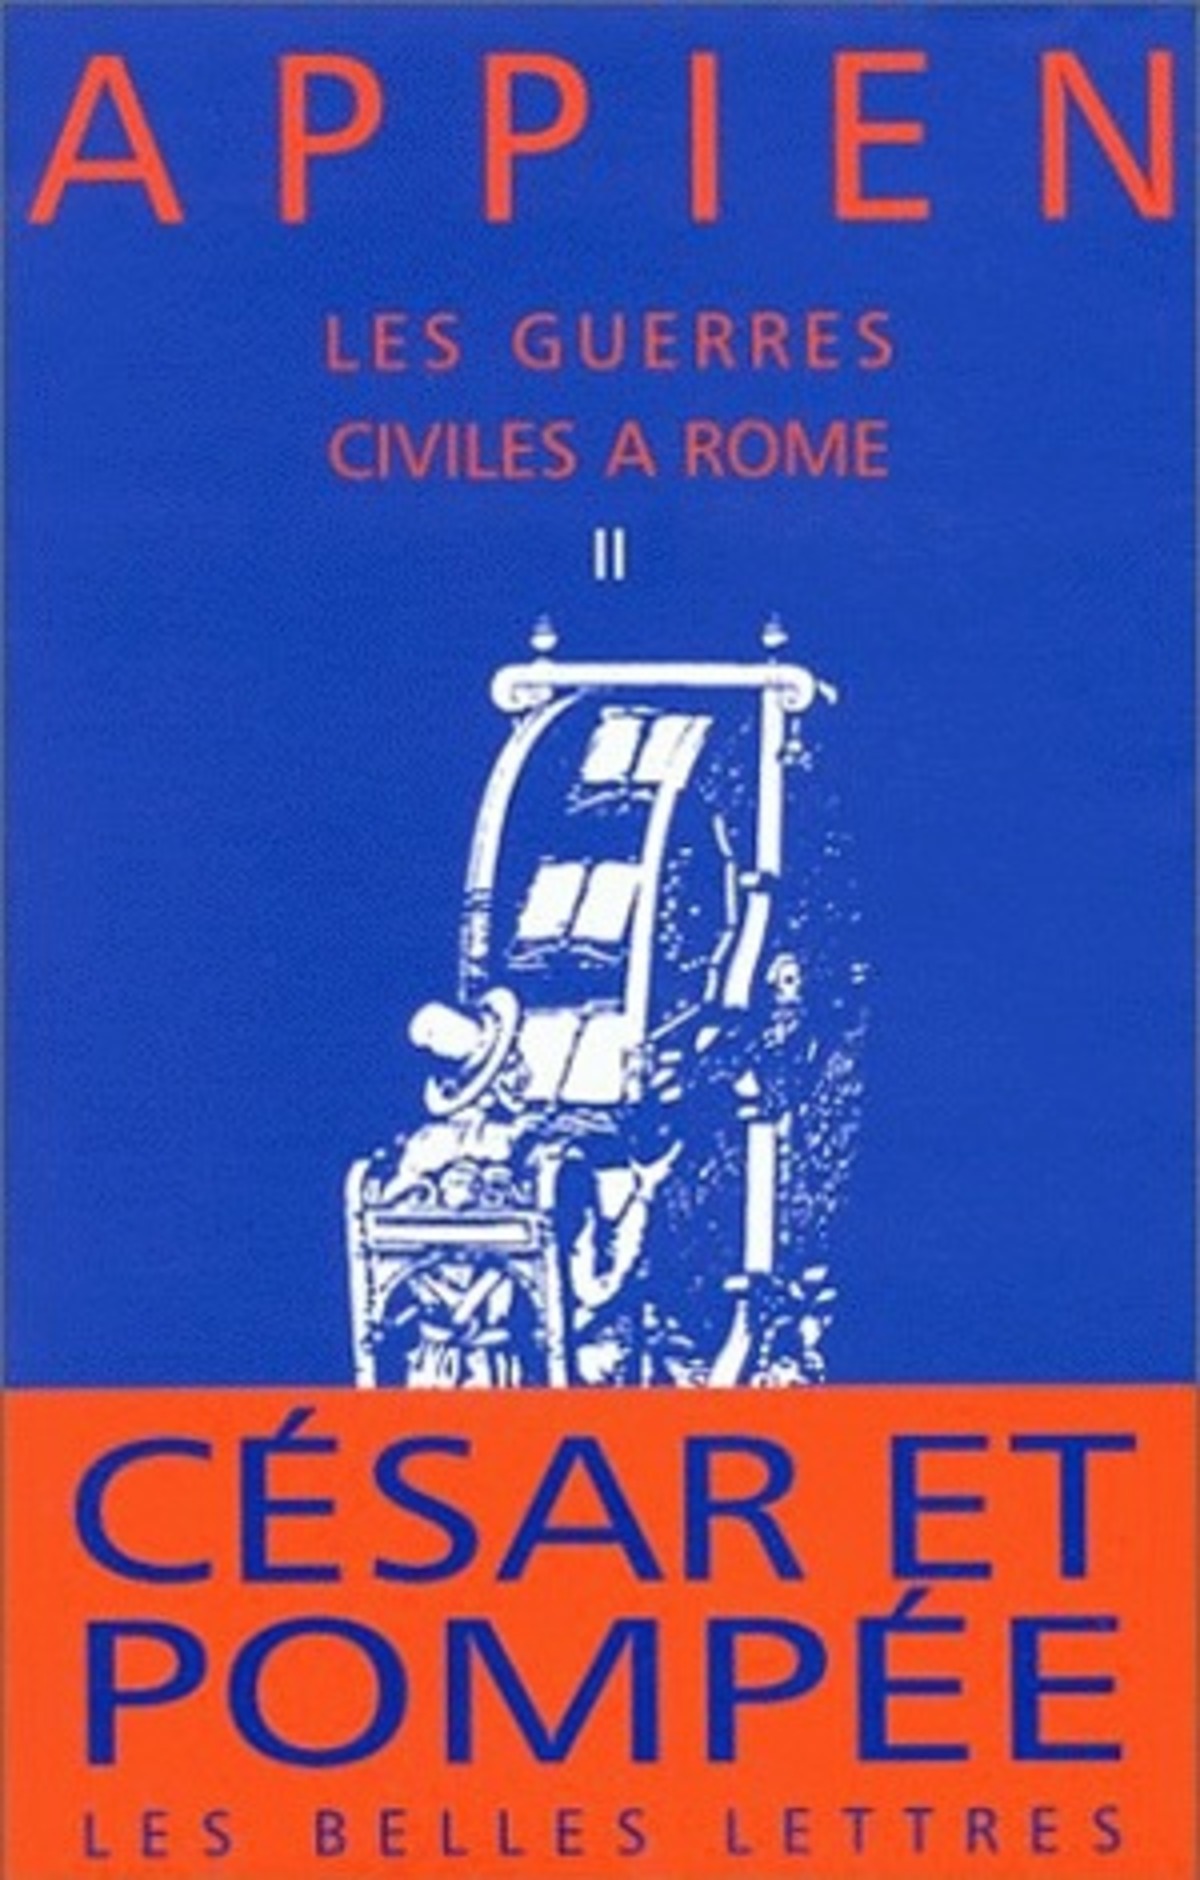 Les Guerres civiles à Rome - Livre II